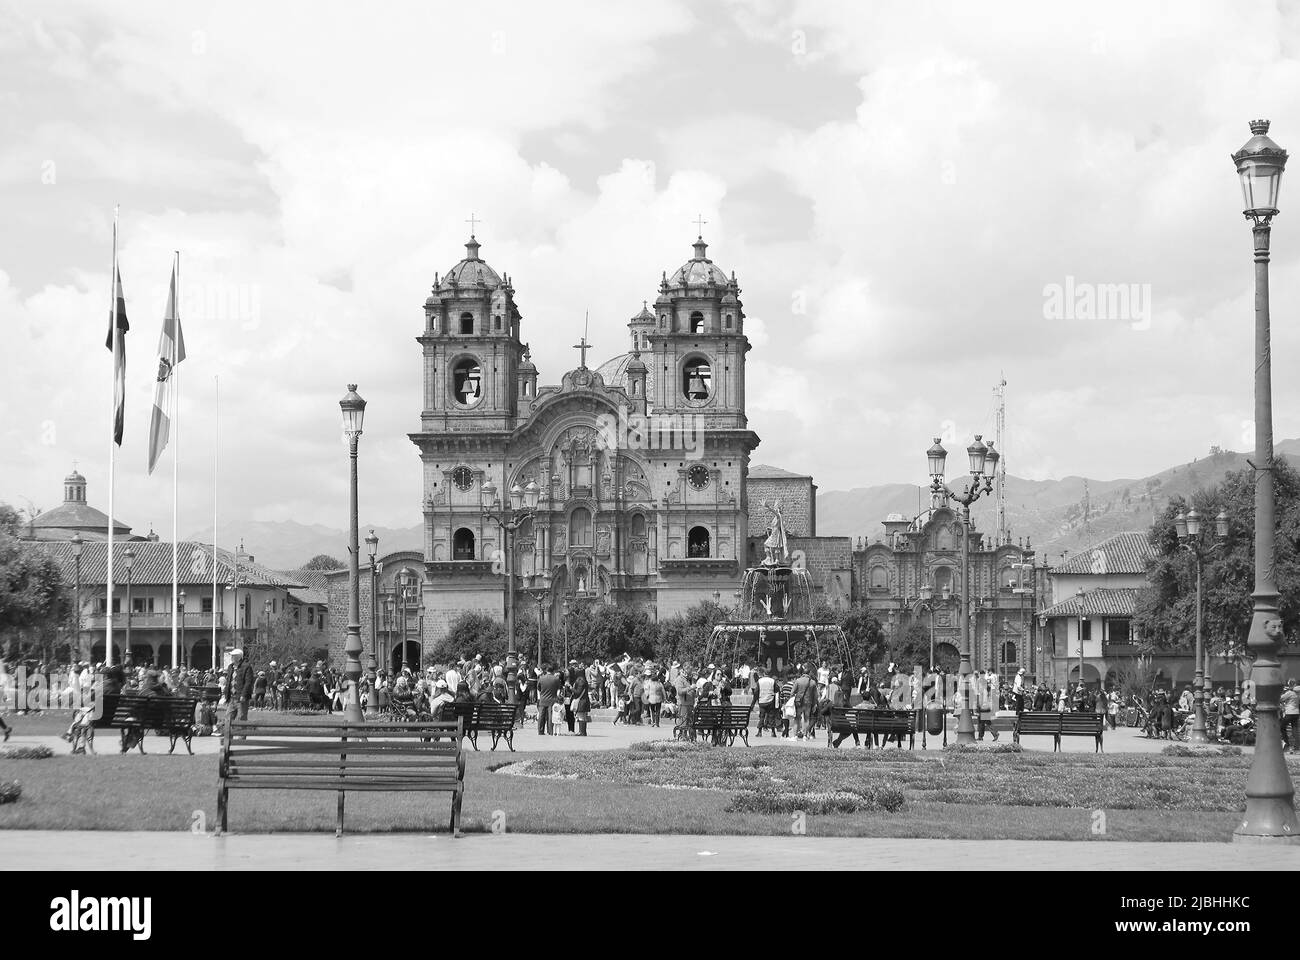 Immagine monocromatica della Chiesa di Iglesia de la Compania de Jesus, uno dei luoghi di interesse più belli di Plaza de Armas a Cusco, in Perù Foto Stock